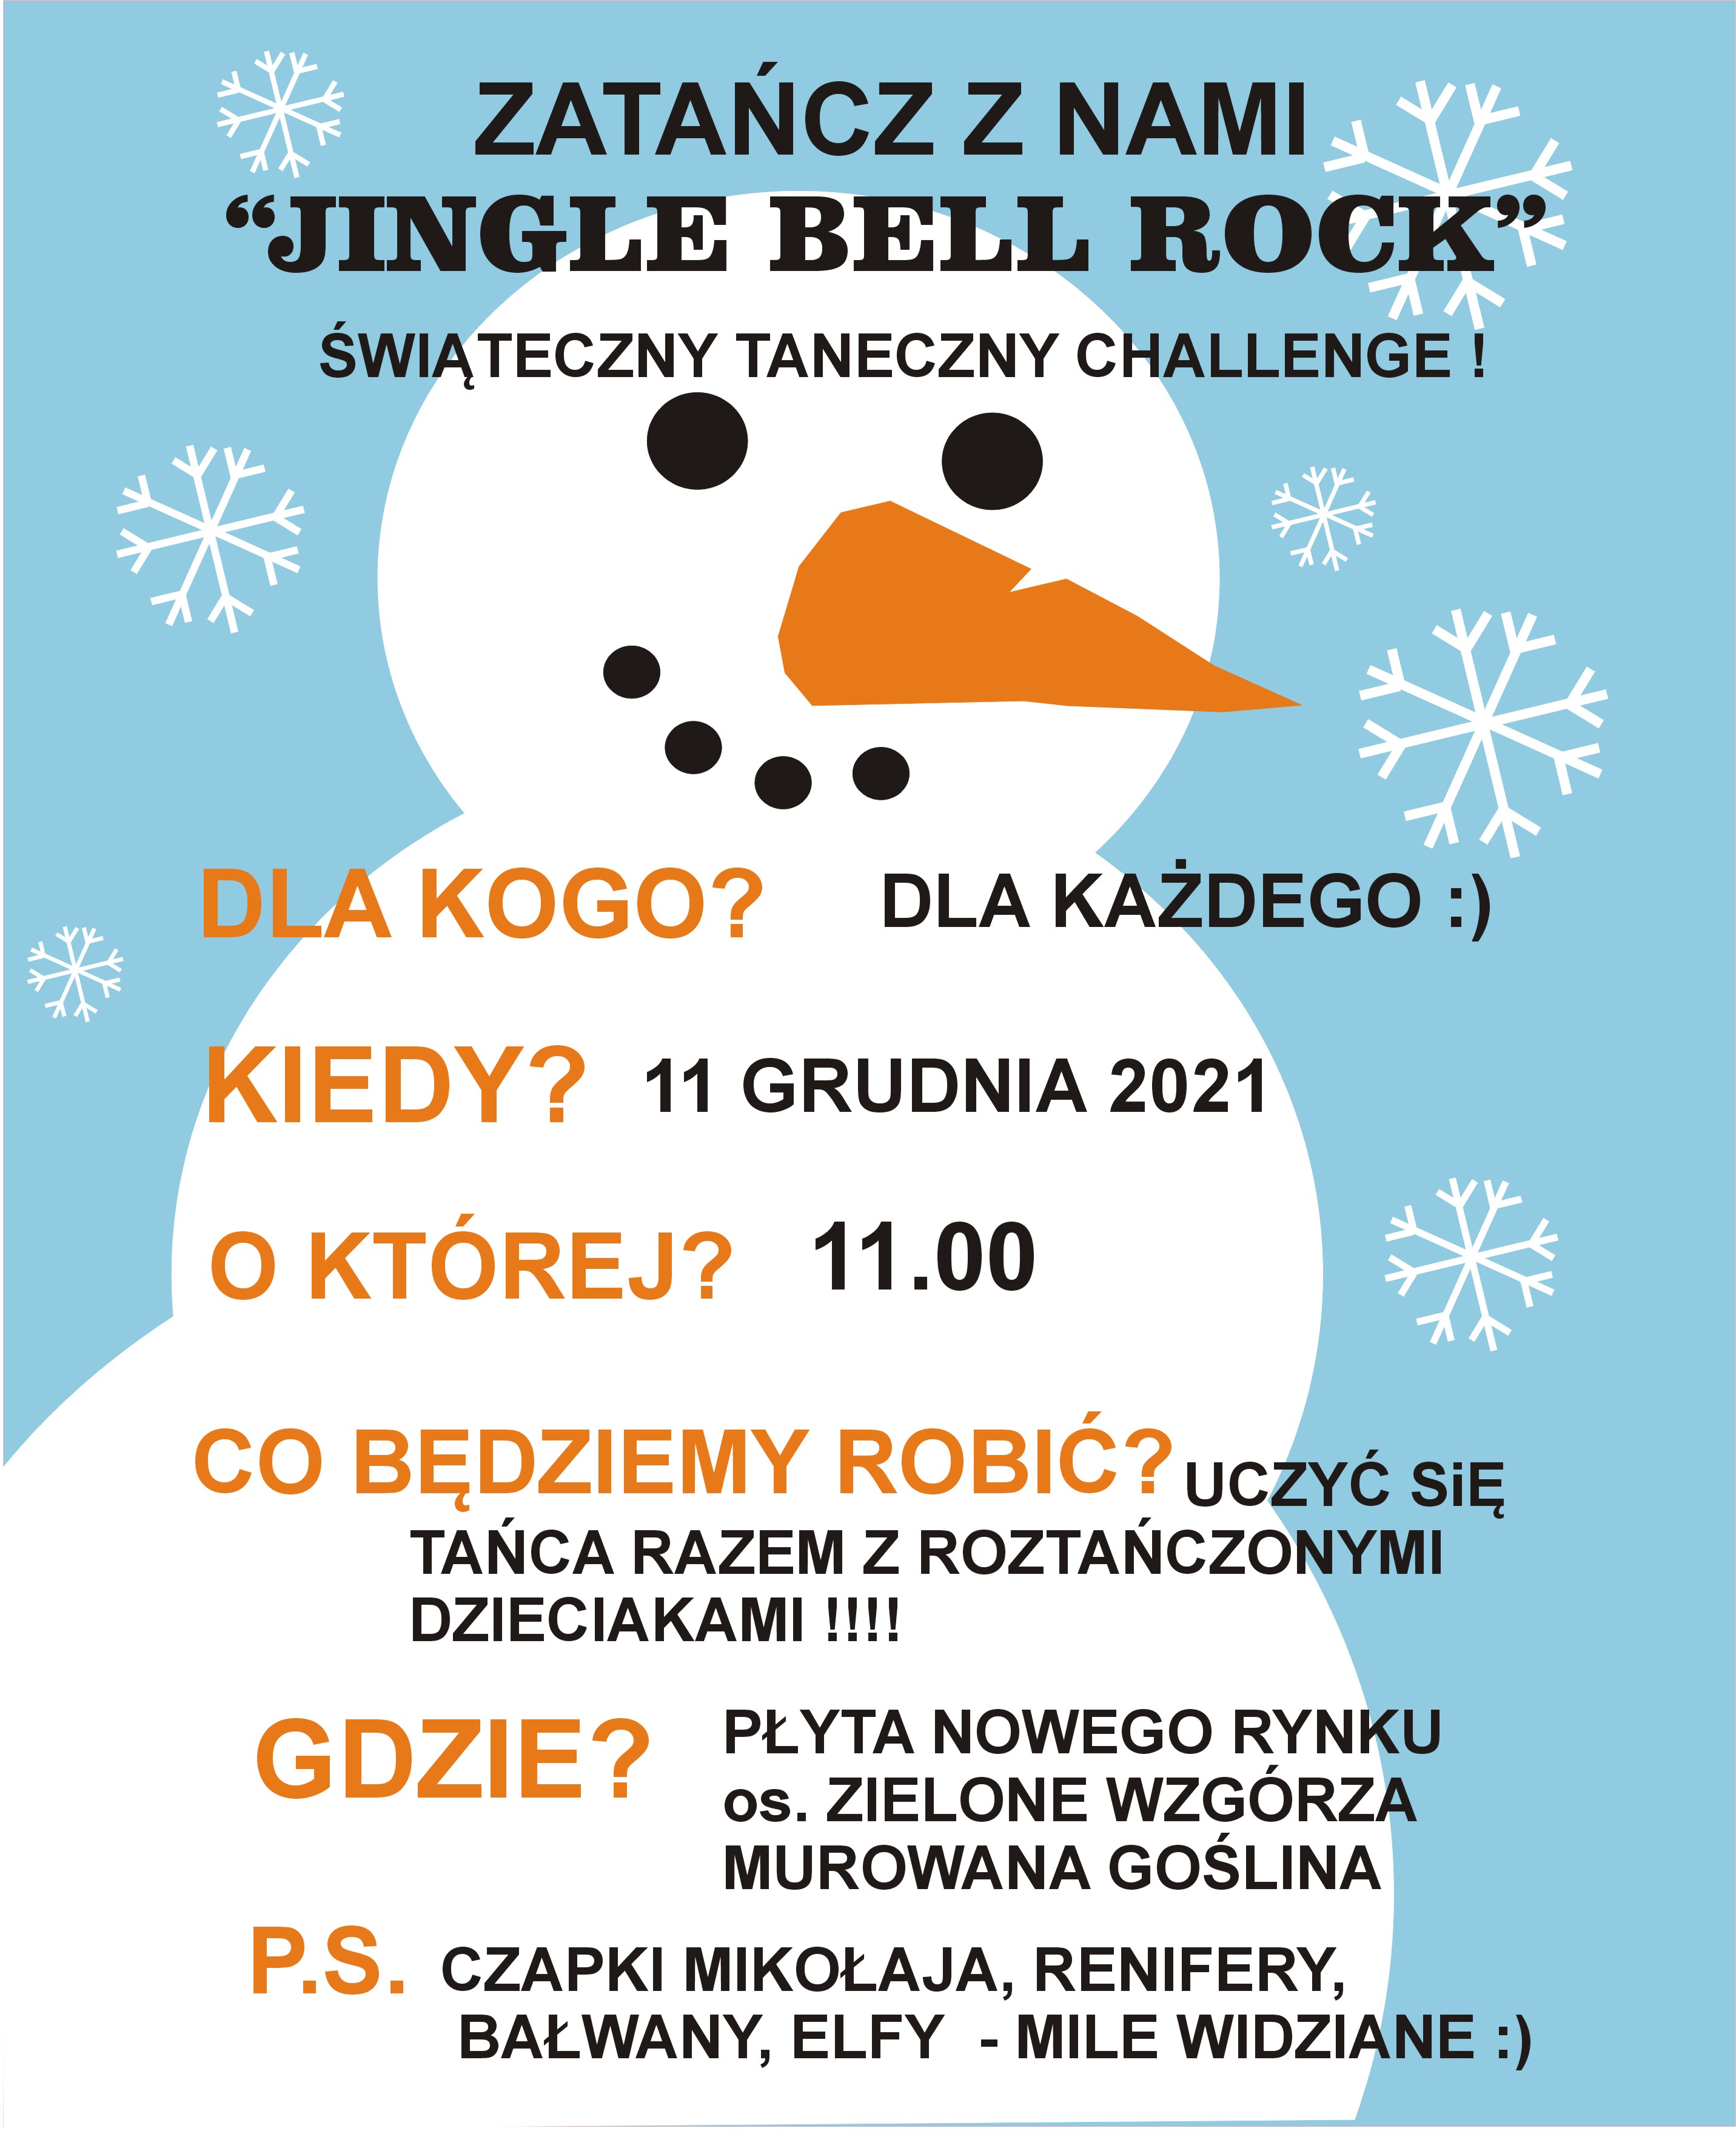 Zatańcz z nami, płyta Nowego Rynku 11 grudnia, godz. 11.00 obowiązują stroje - czapki  św. Mikołaja, renifery, bałwany